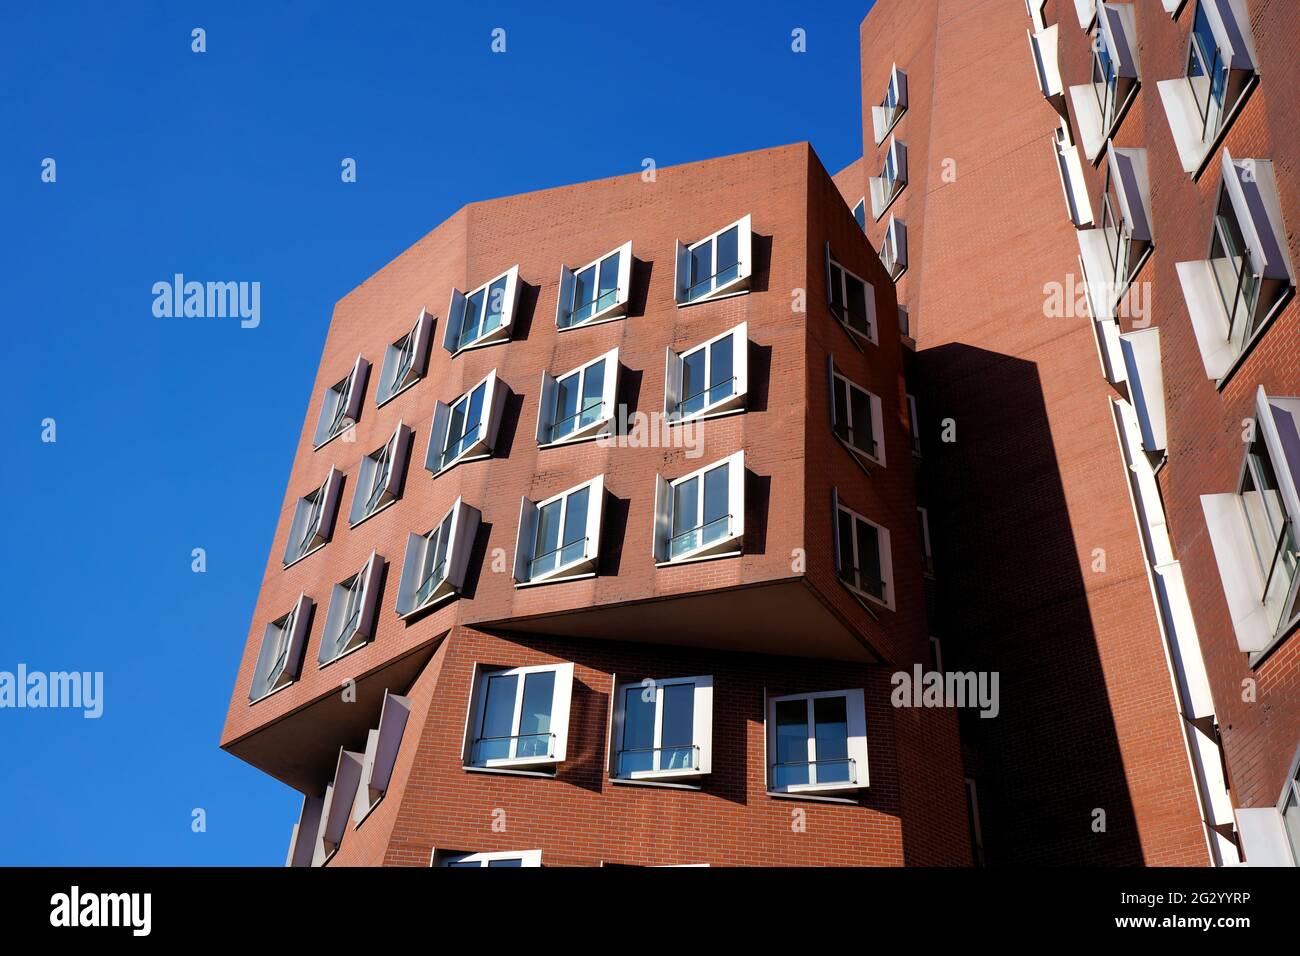 Ein vom Stararchitekten Frank O. Gehry entworfenes Gebäude im Neuen Zollhof, Medienhafen / Media Harbour in Düsseldorf. Stockfoto